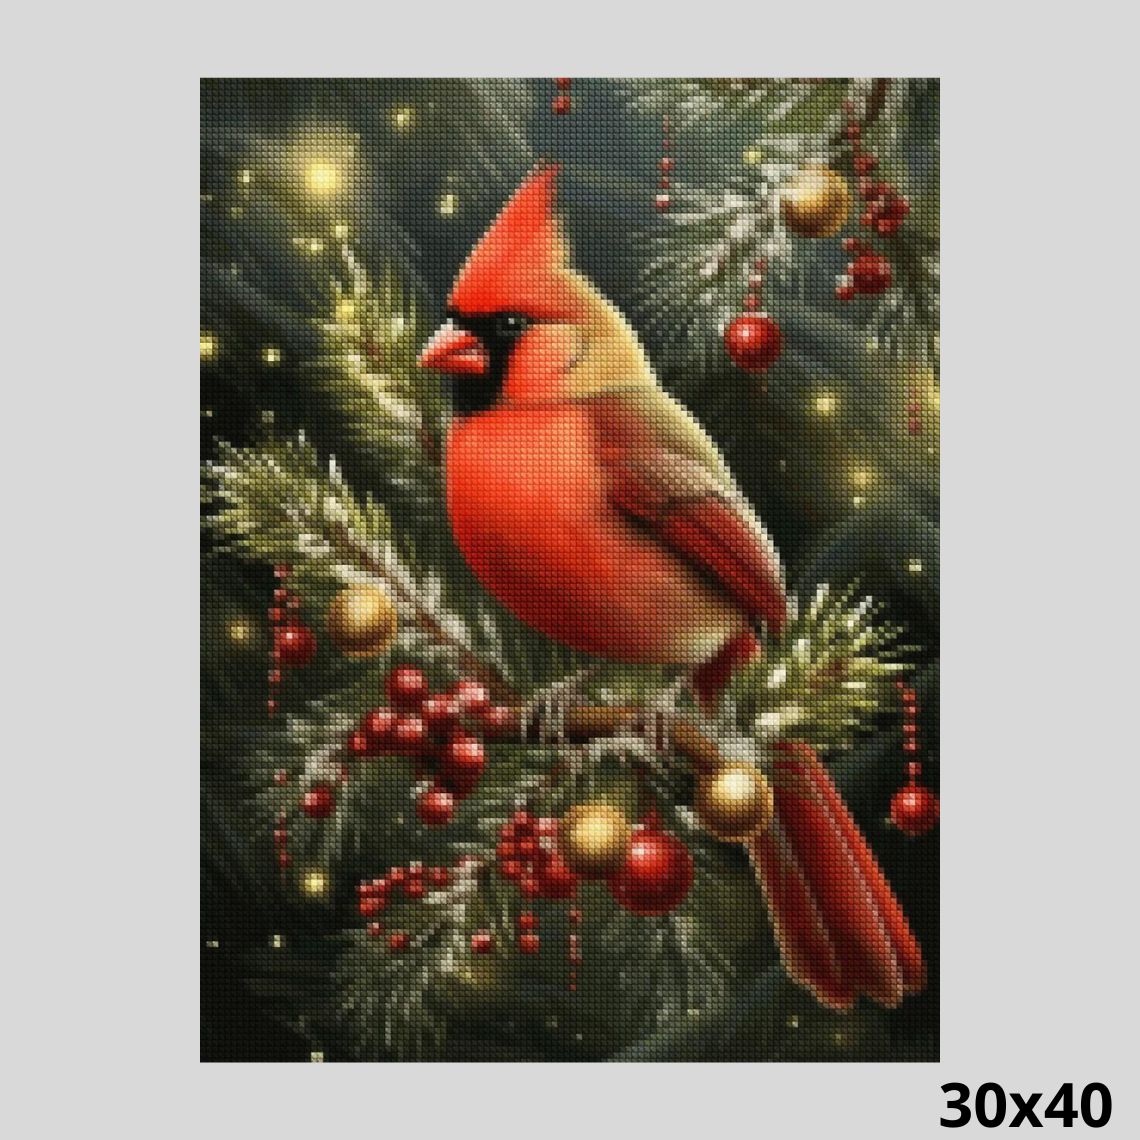 Winter Cardinal Perch - Diamond Painting Kit